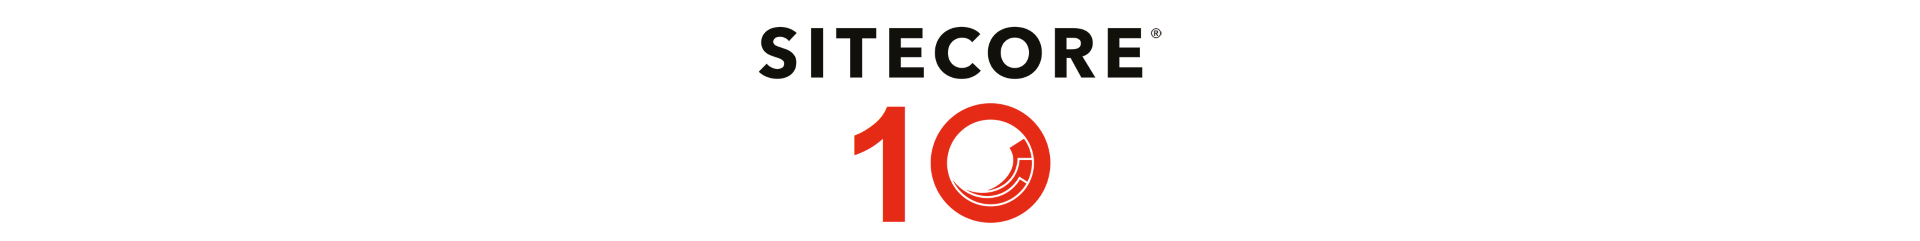 Sitecore 10